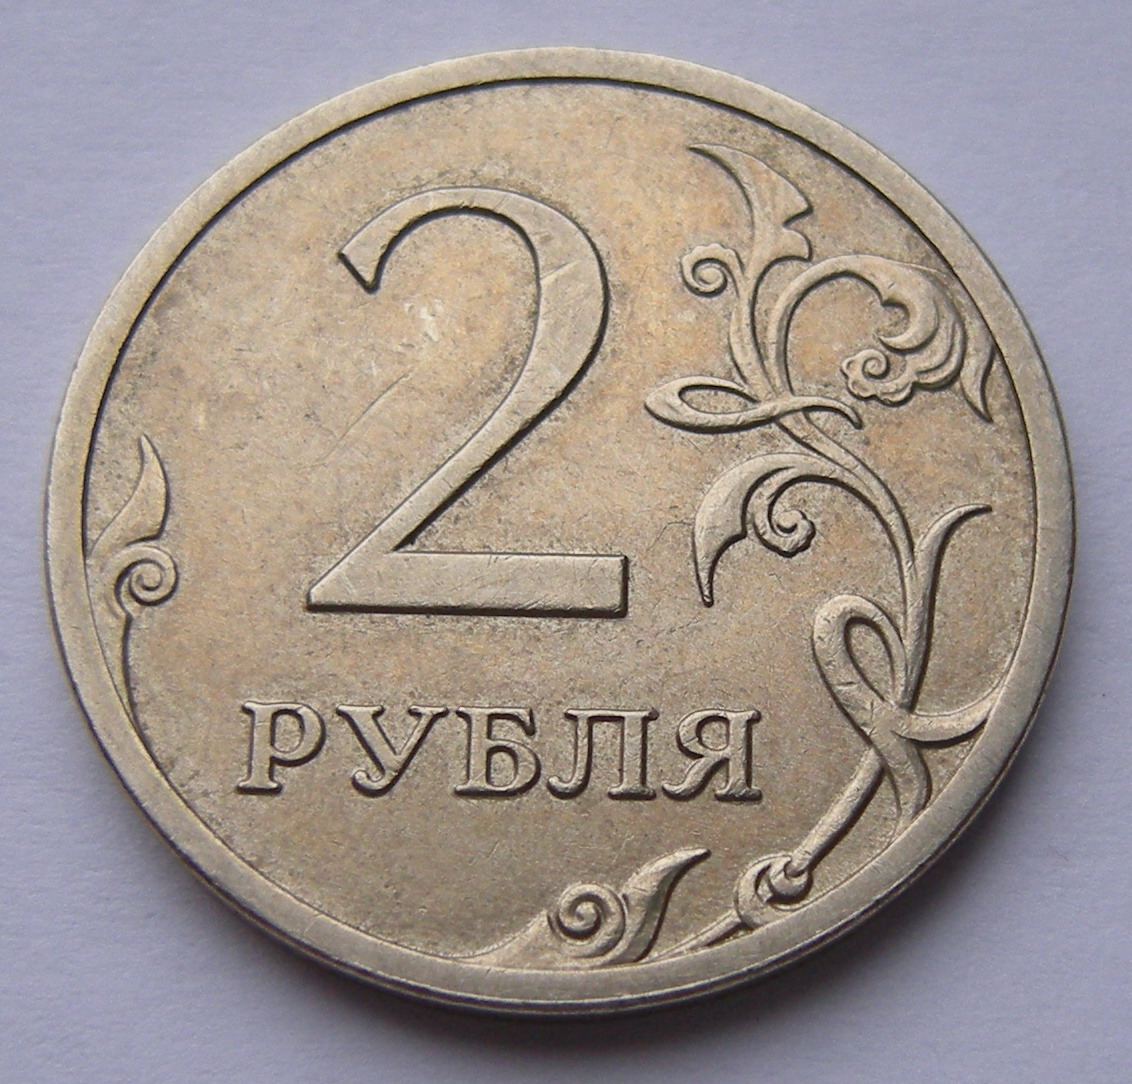 Наличные 5 рублей. Монета 2 рубля. Монеты 1 2 5 рублей. Изображение монет. Монеты 1 руб 2 руб.